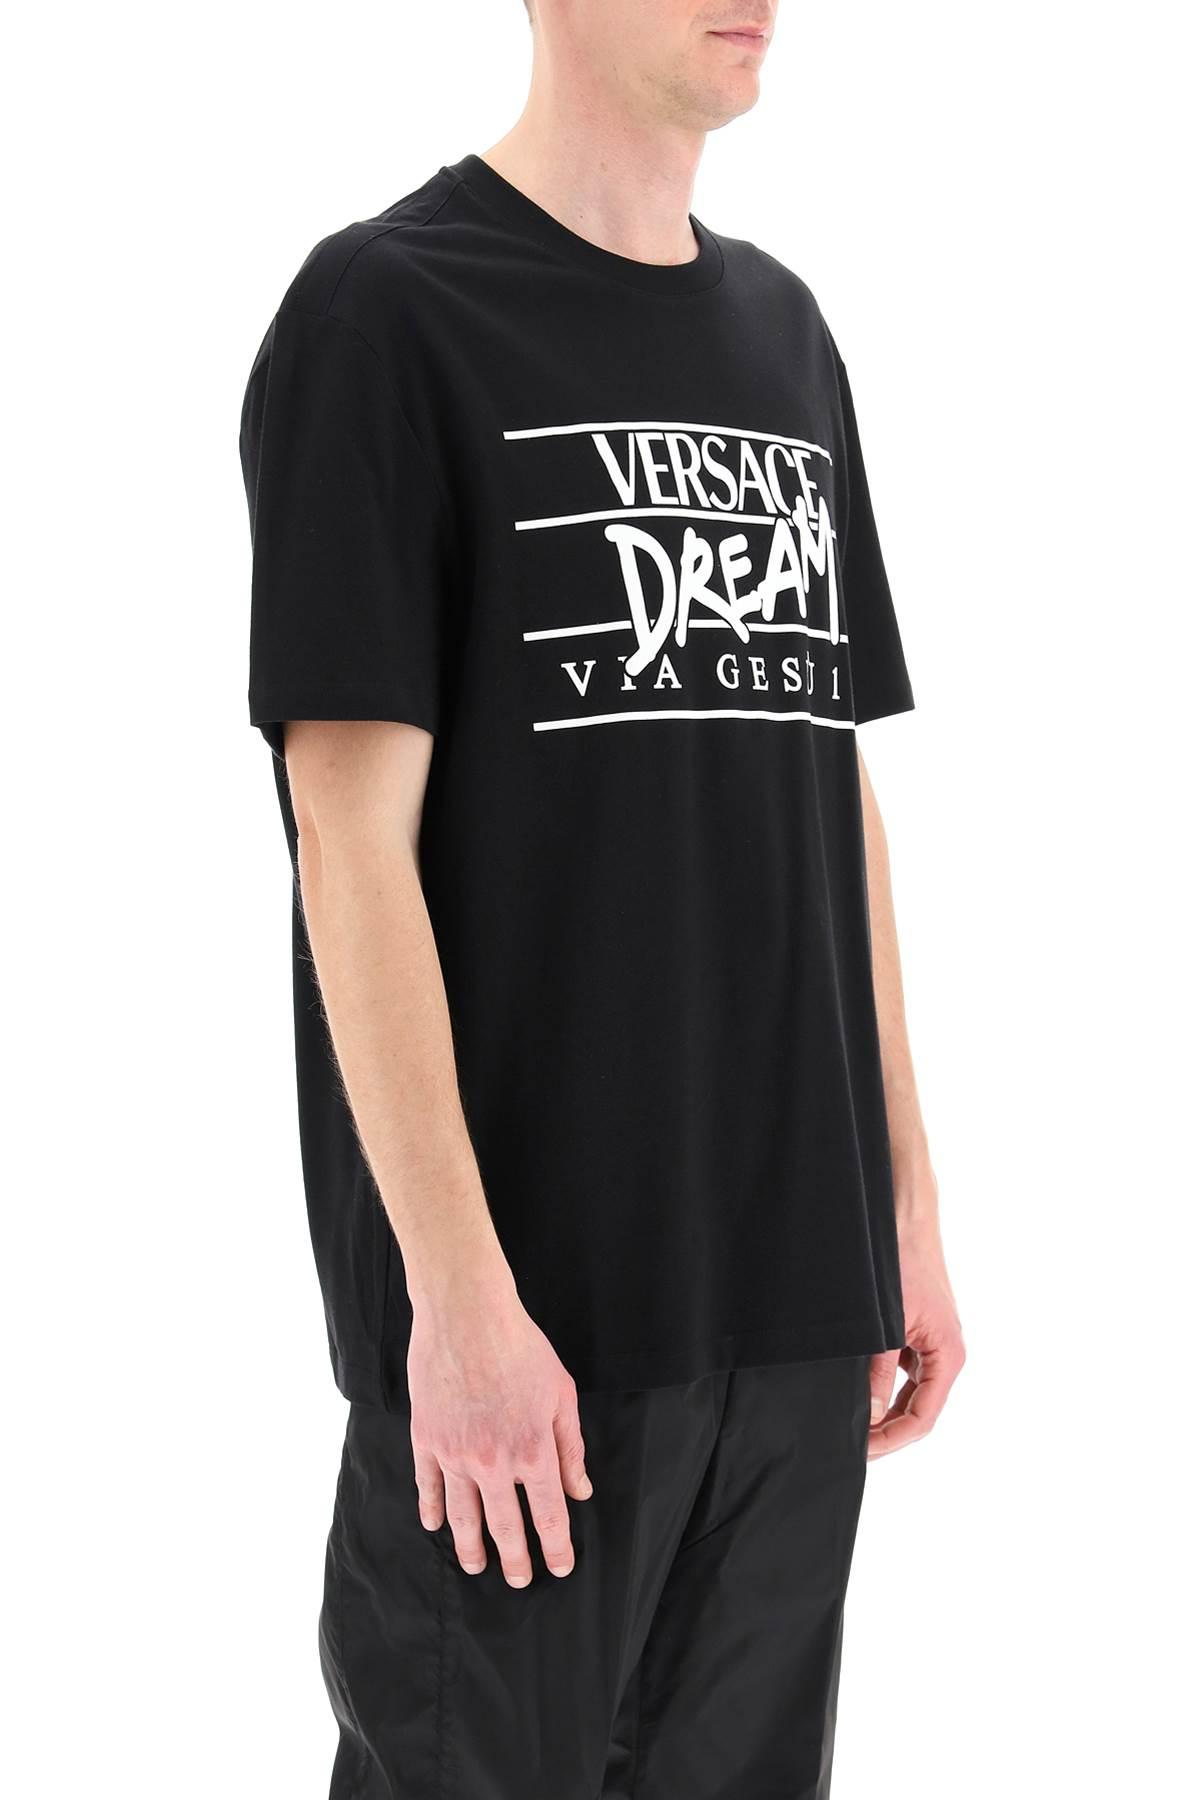 Versace Dream Logo T-shirt in Black for Men | Lyst